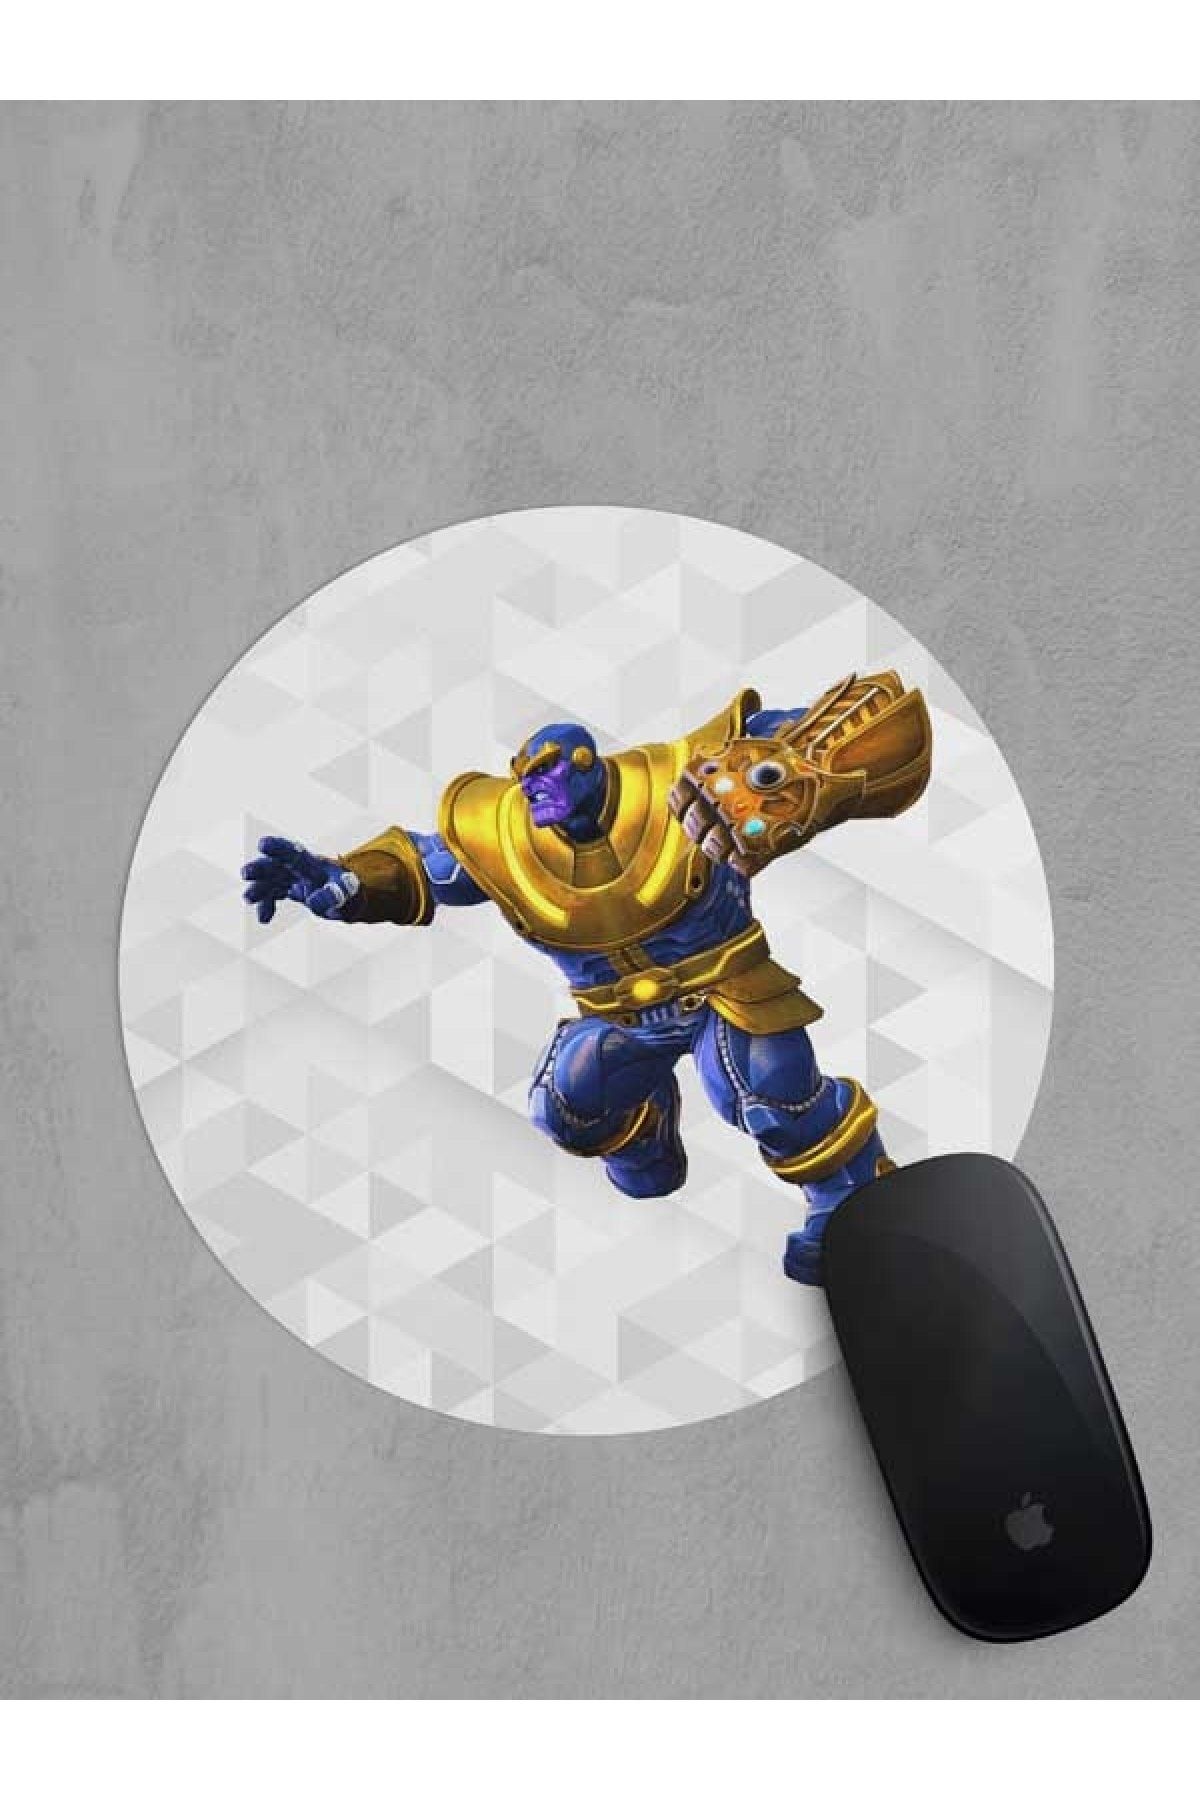 Panorama Ajans Thanos Marvel Avengers Süper Kahramanlar Yuvarlak Mouse Pad